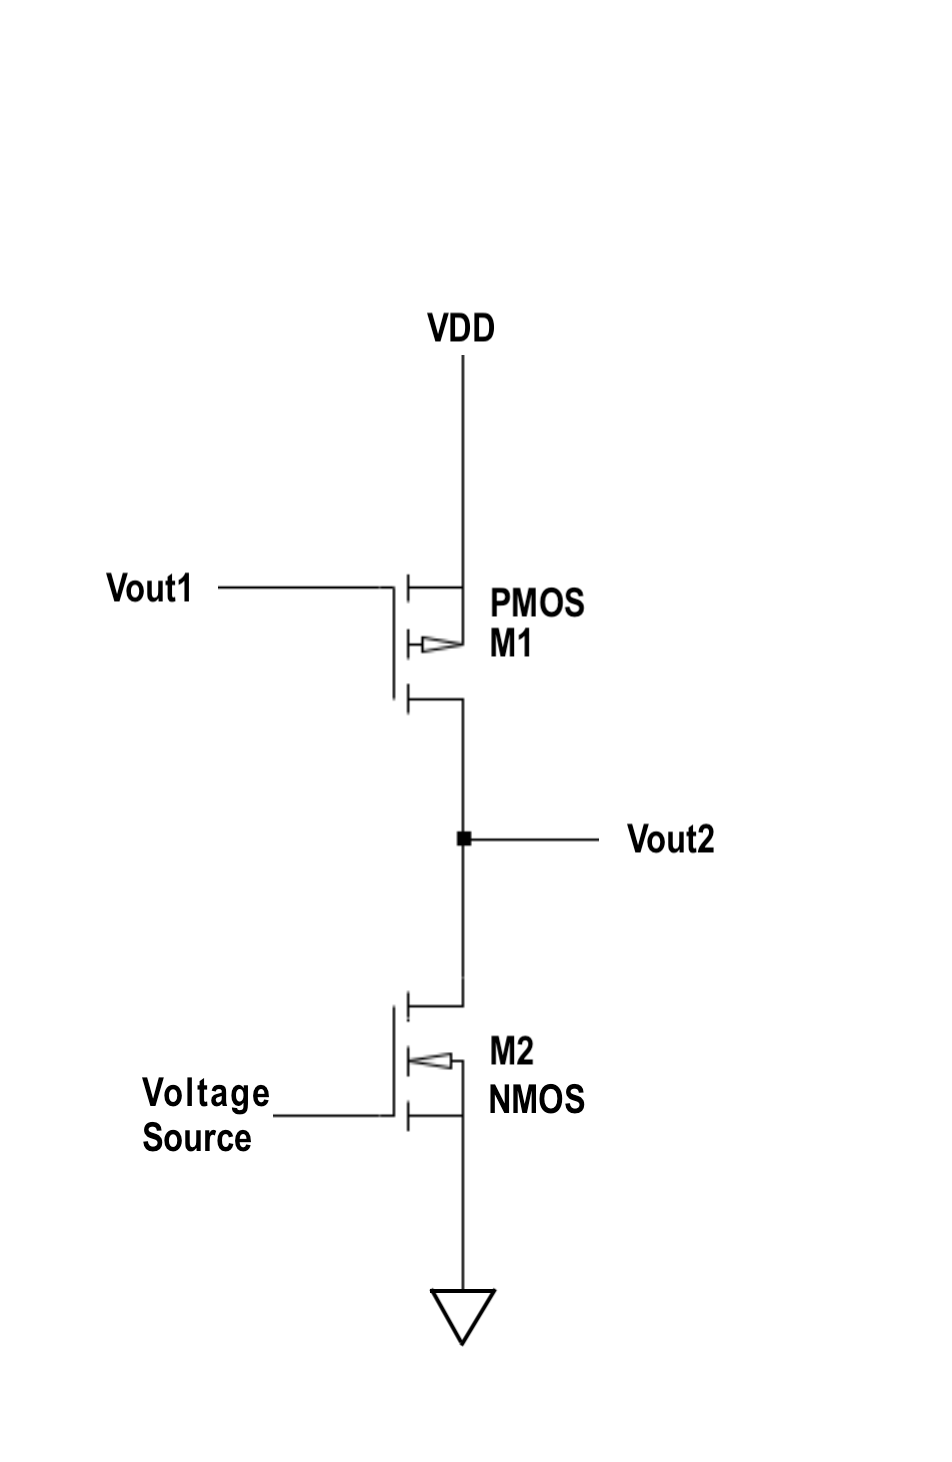 Vout1
Voltage
Source
VDD
PMOS
M1
M2
NMOS
Vout2